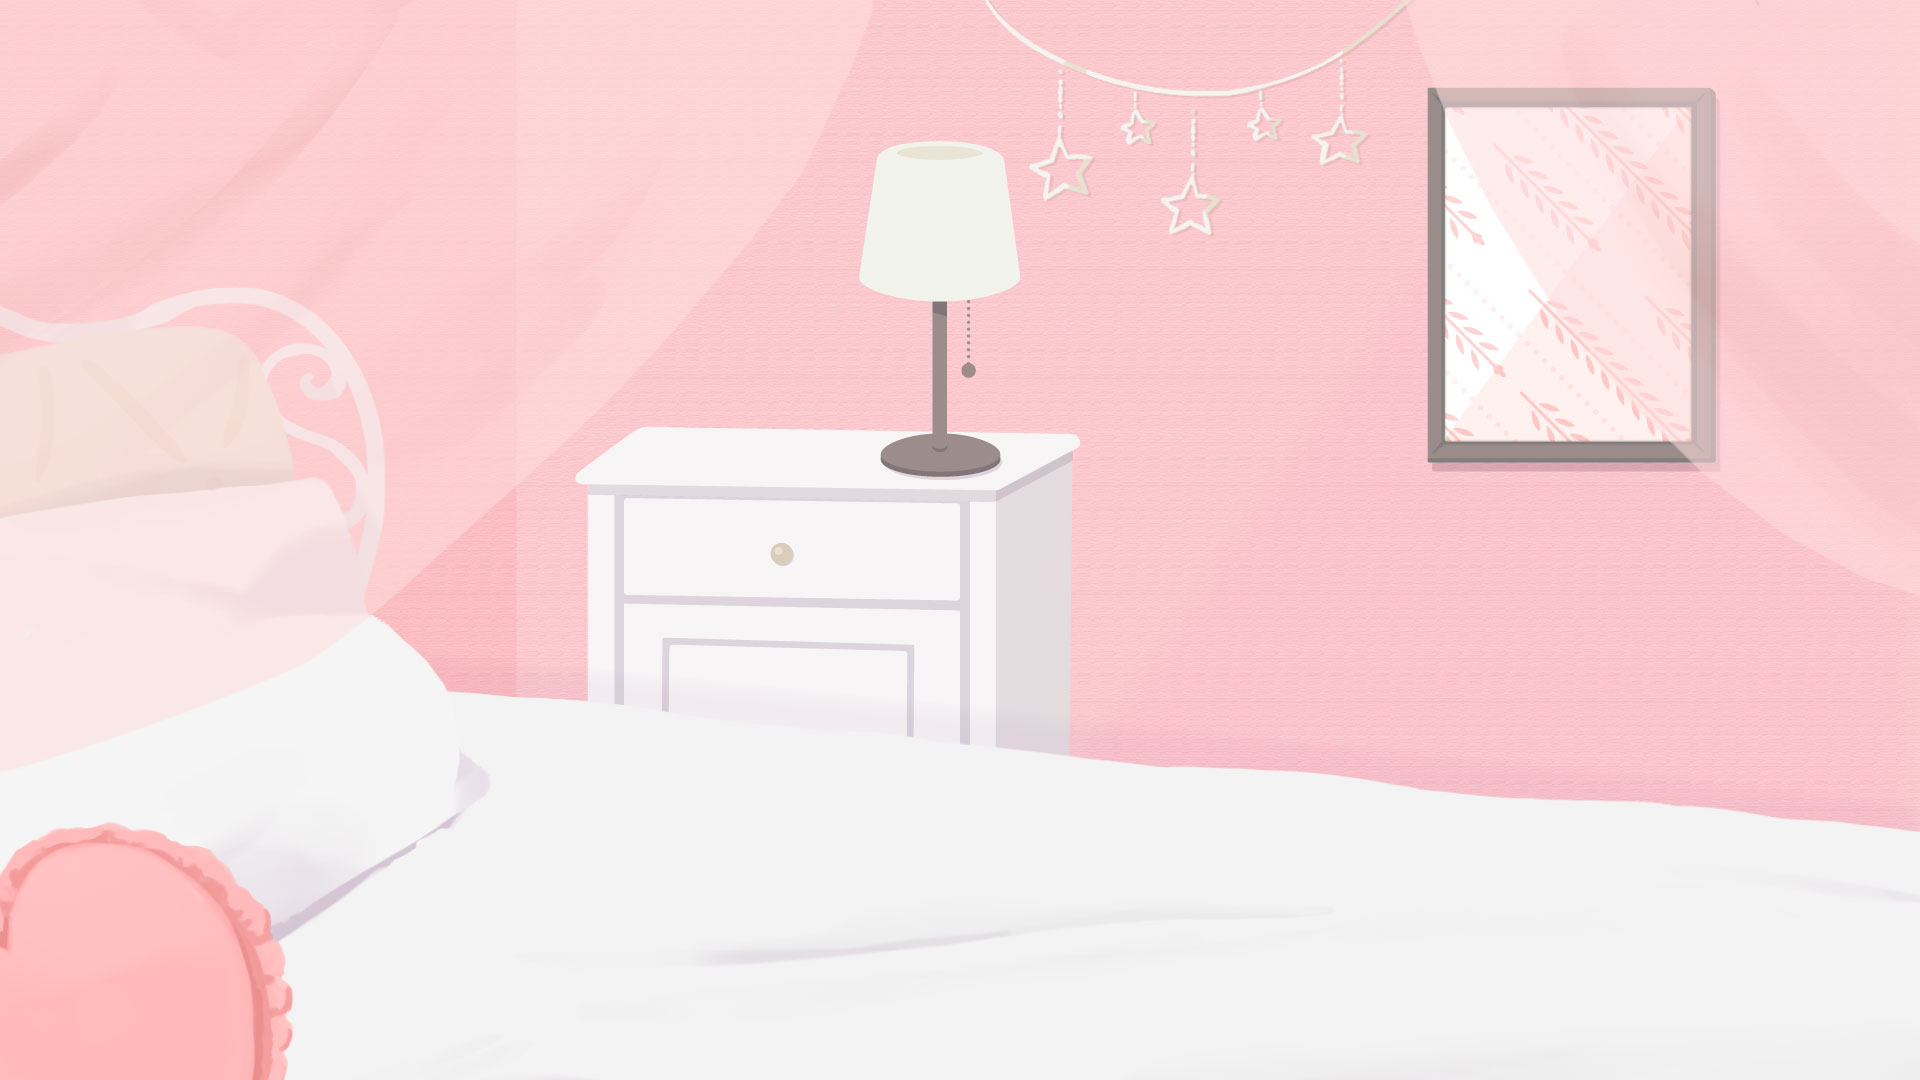 かわいいピンク色の部屋のイラスト素材 Okumono